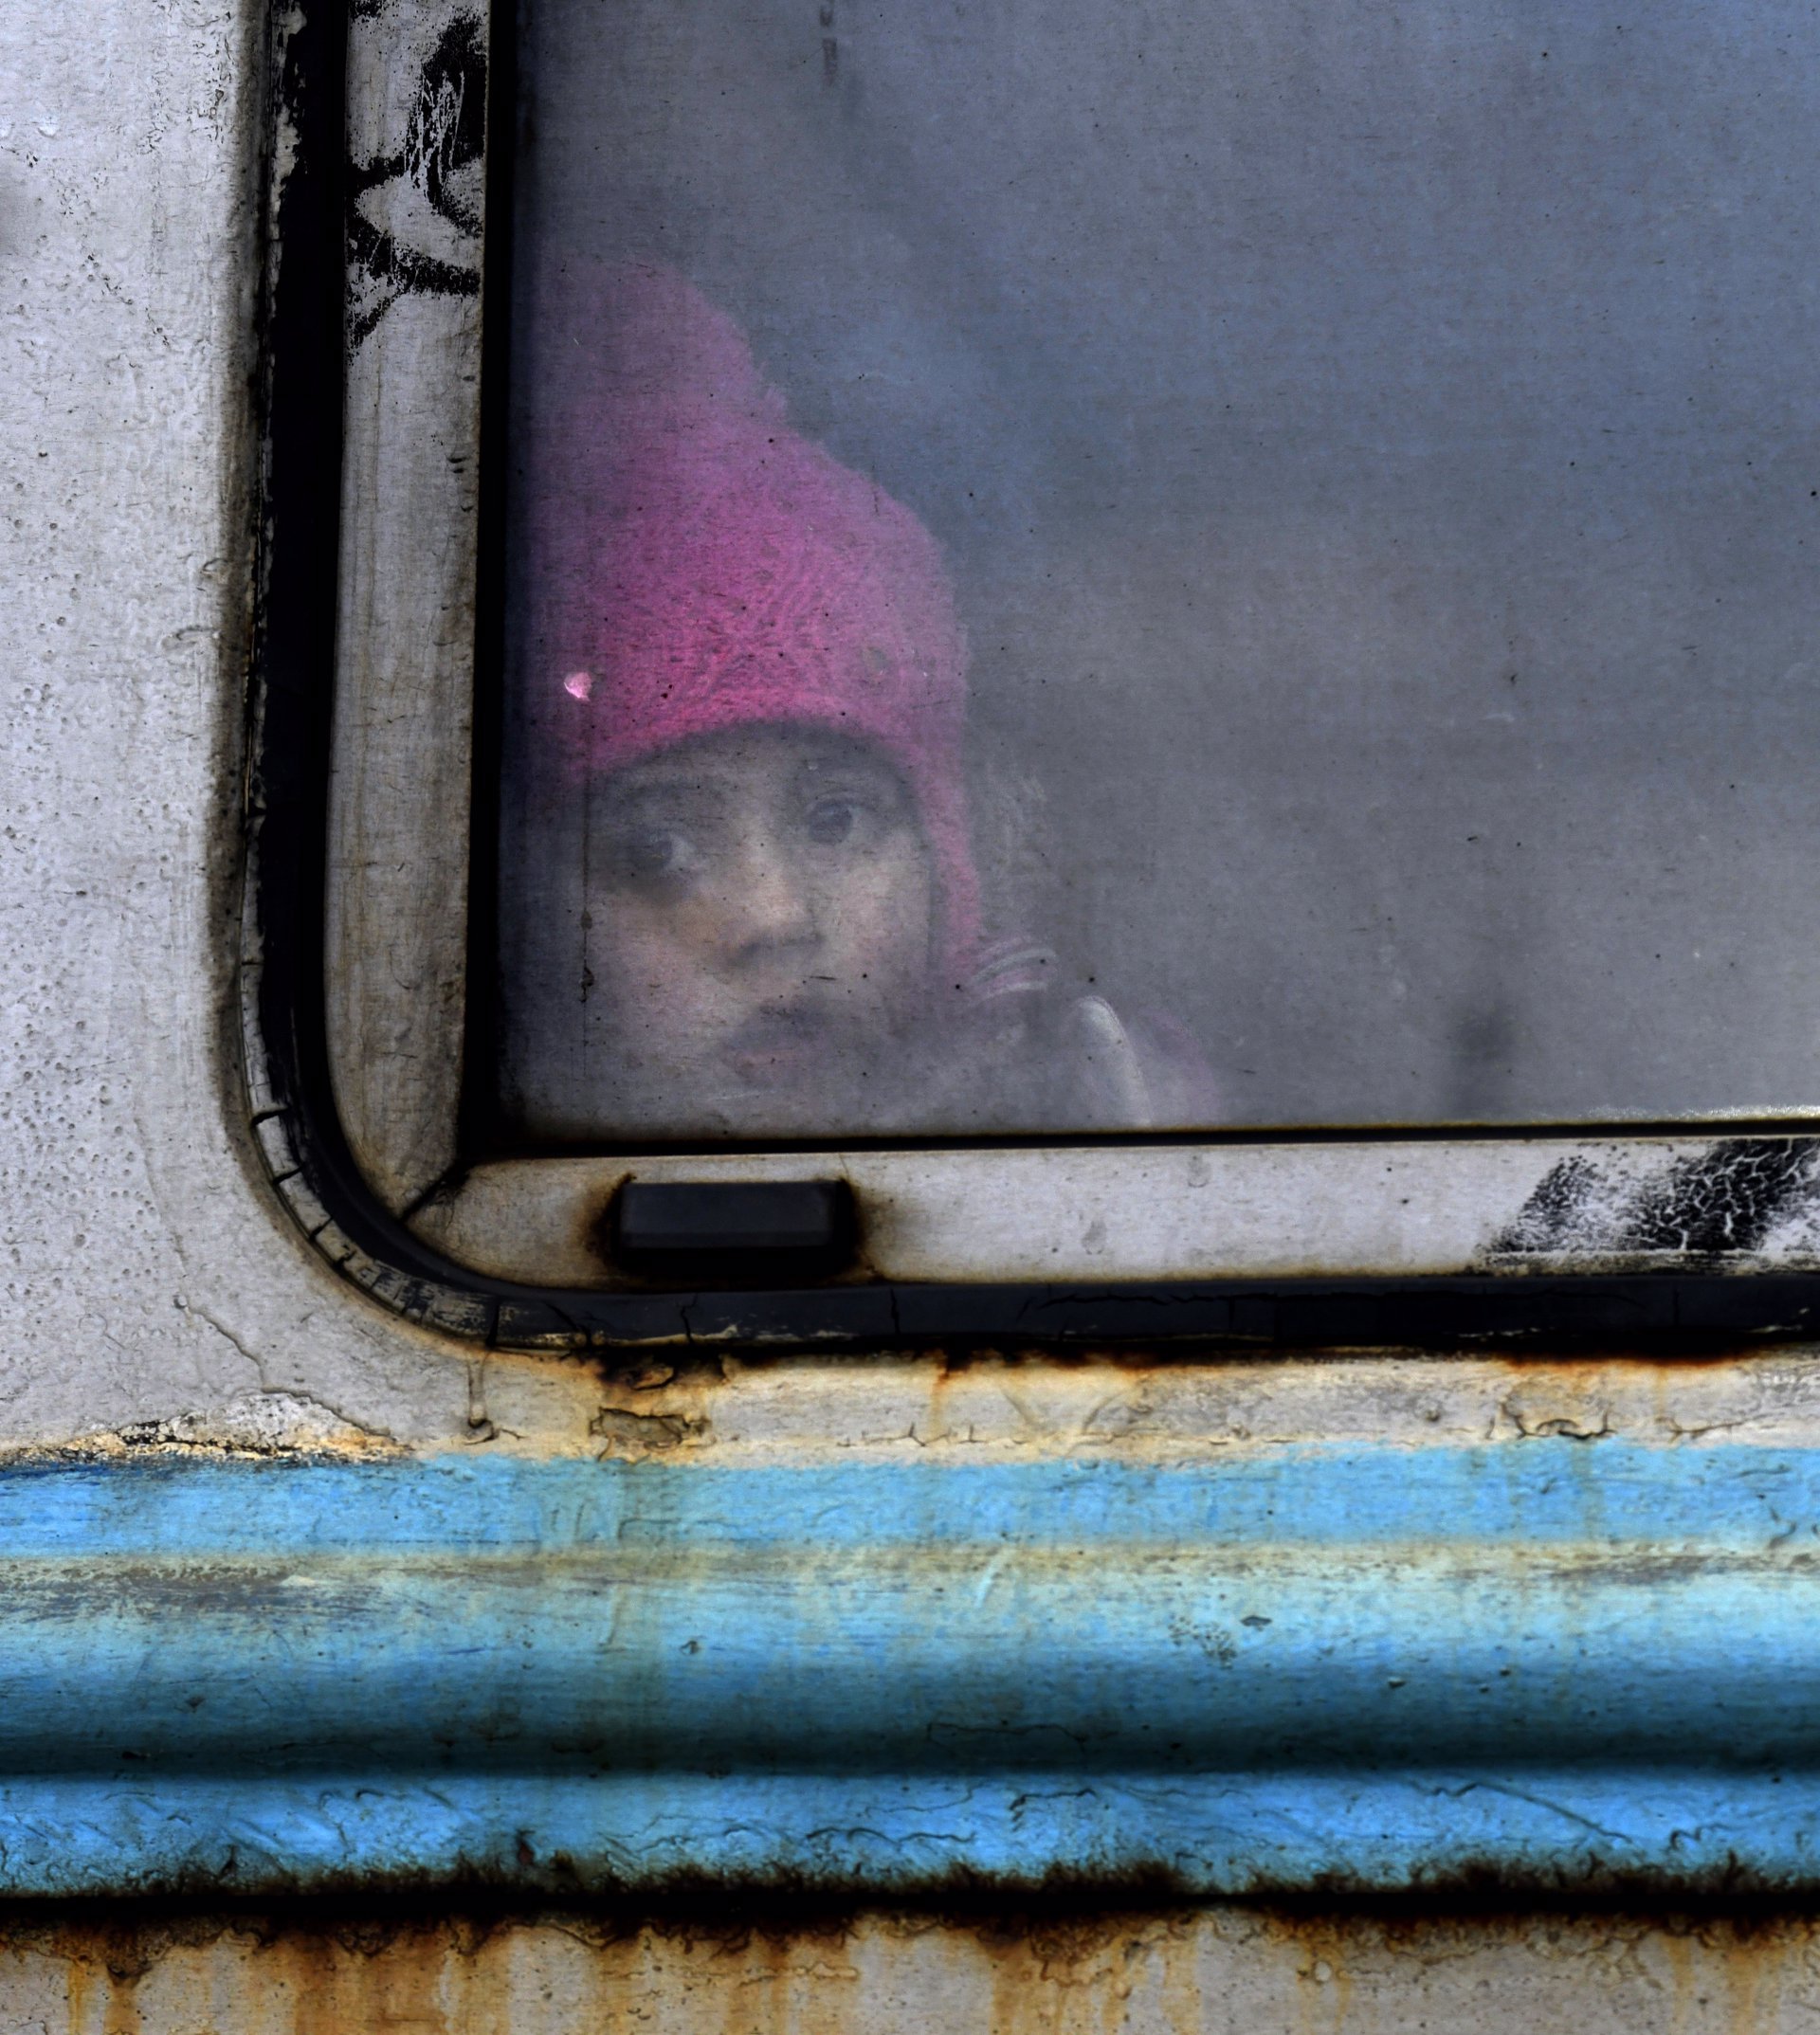 Refugiados Ucrania